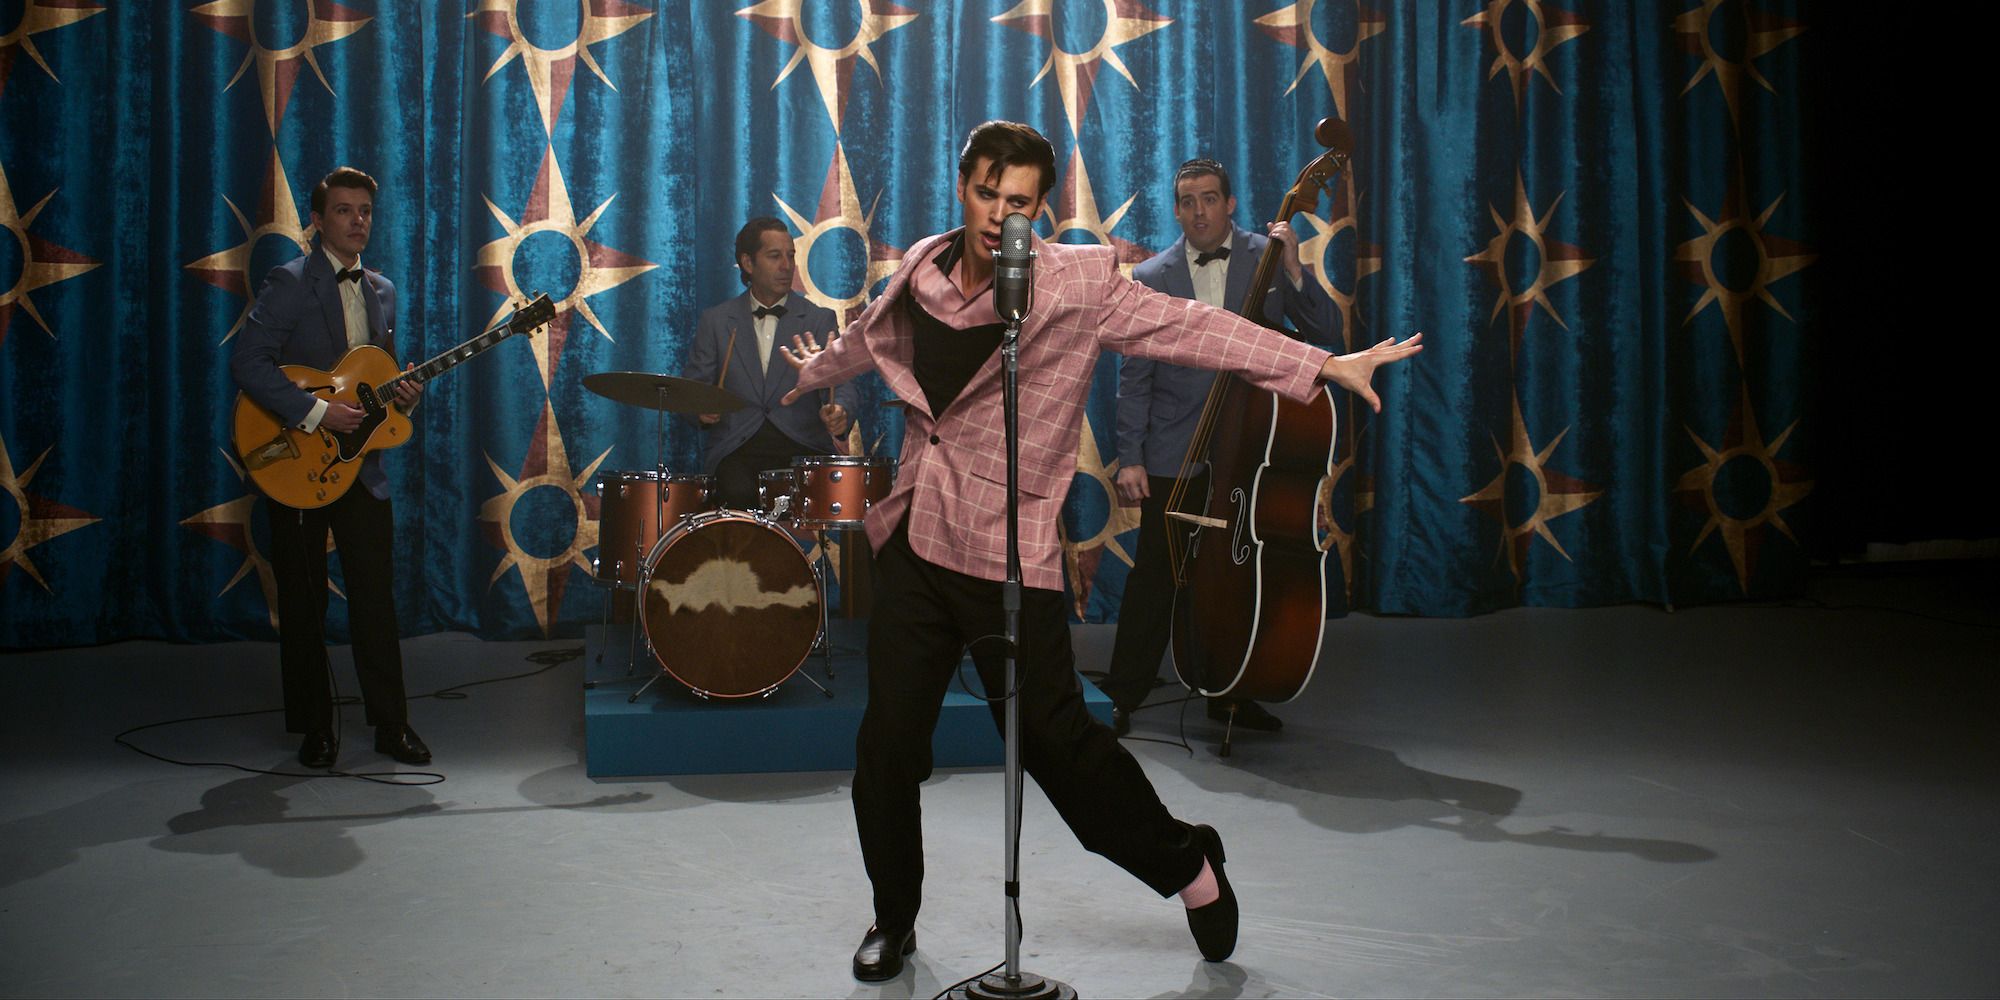 Revisión de Elvis: lo que le falta a la película biográfica de Luhrmann en profundidad lo compensa con estilo